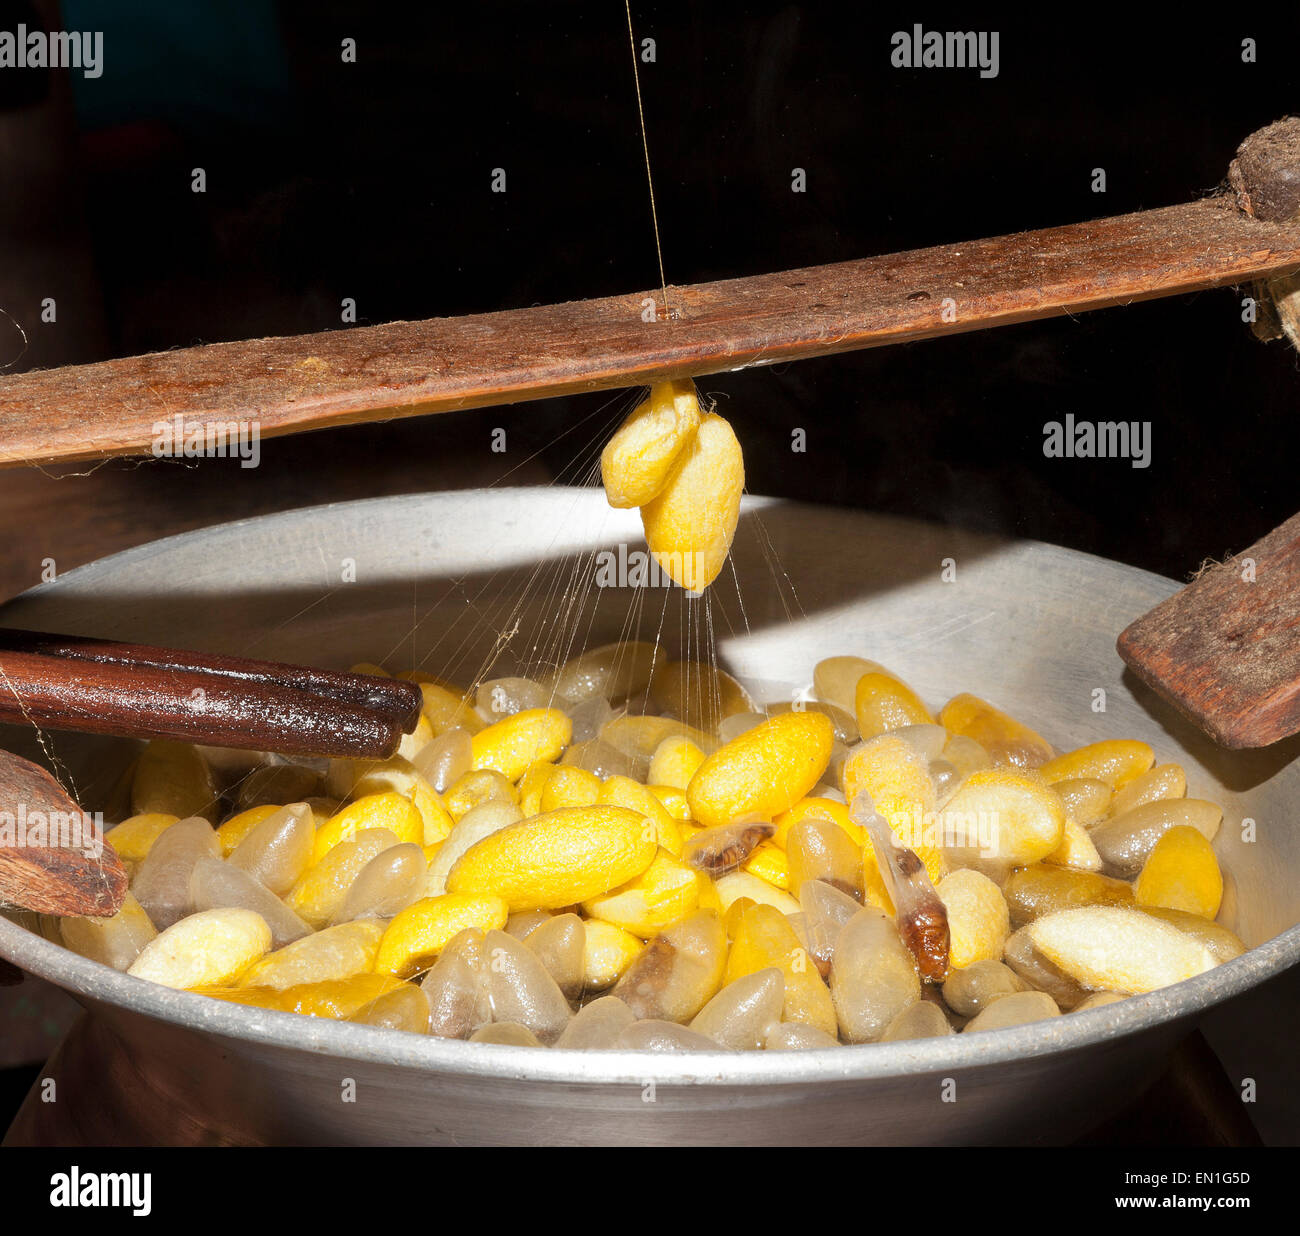 Lavoratori di seta, pentola di acqua calda contenente il silken bozzoli, giallo sono Thai, bianco sono cinesi, Chiang Mai, Thailandia Foto Stock